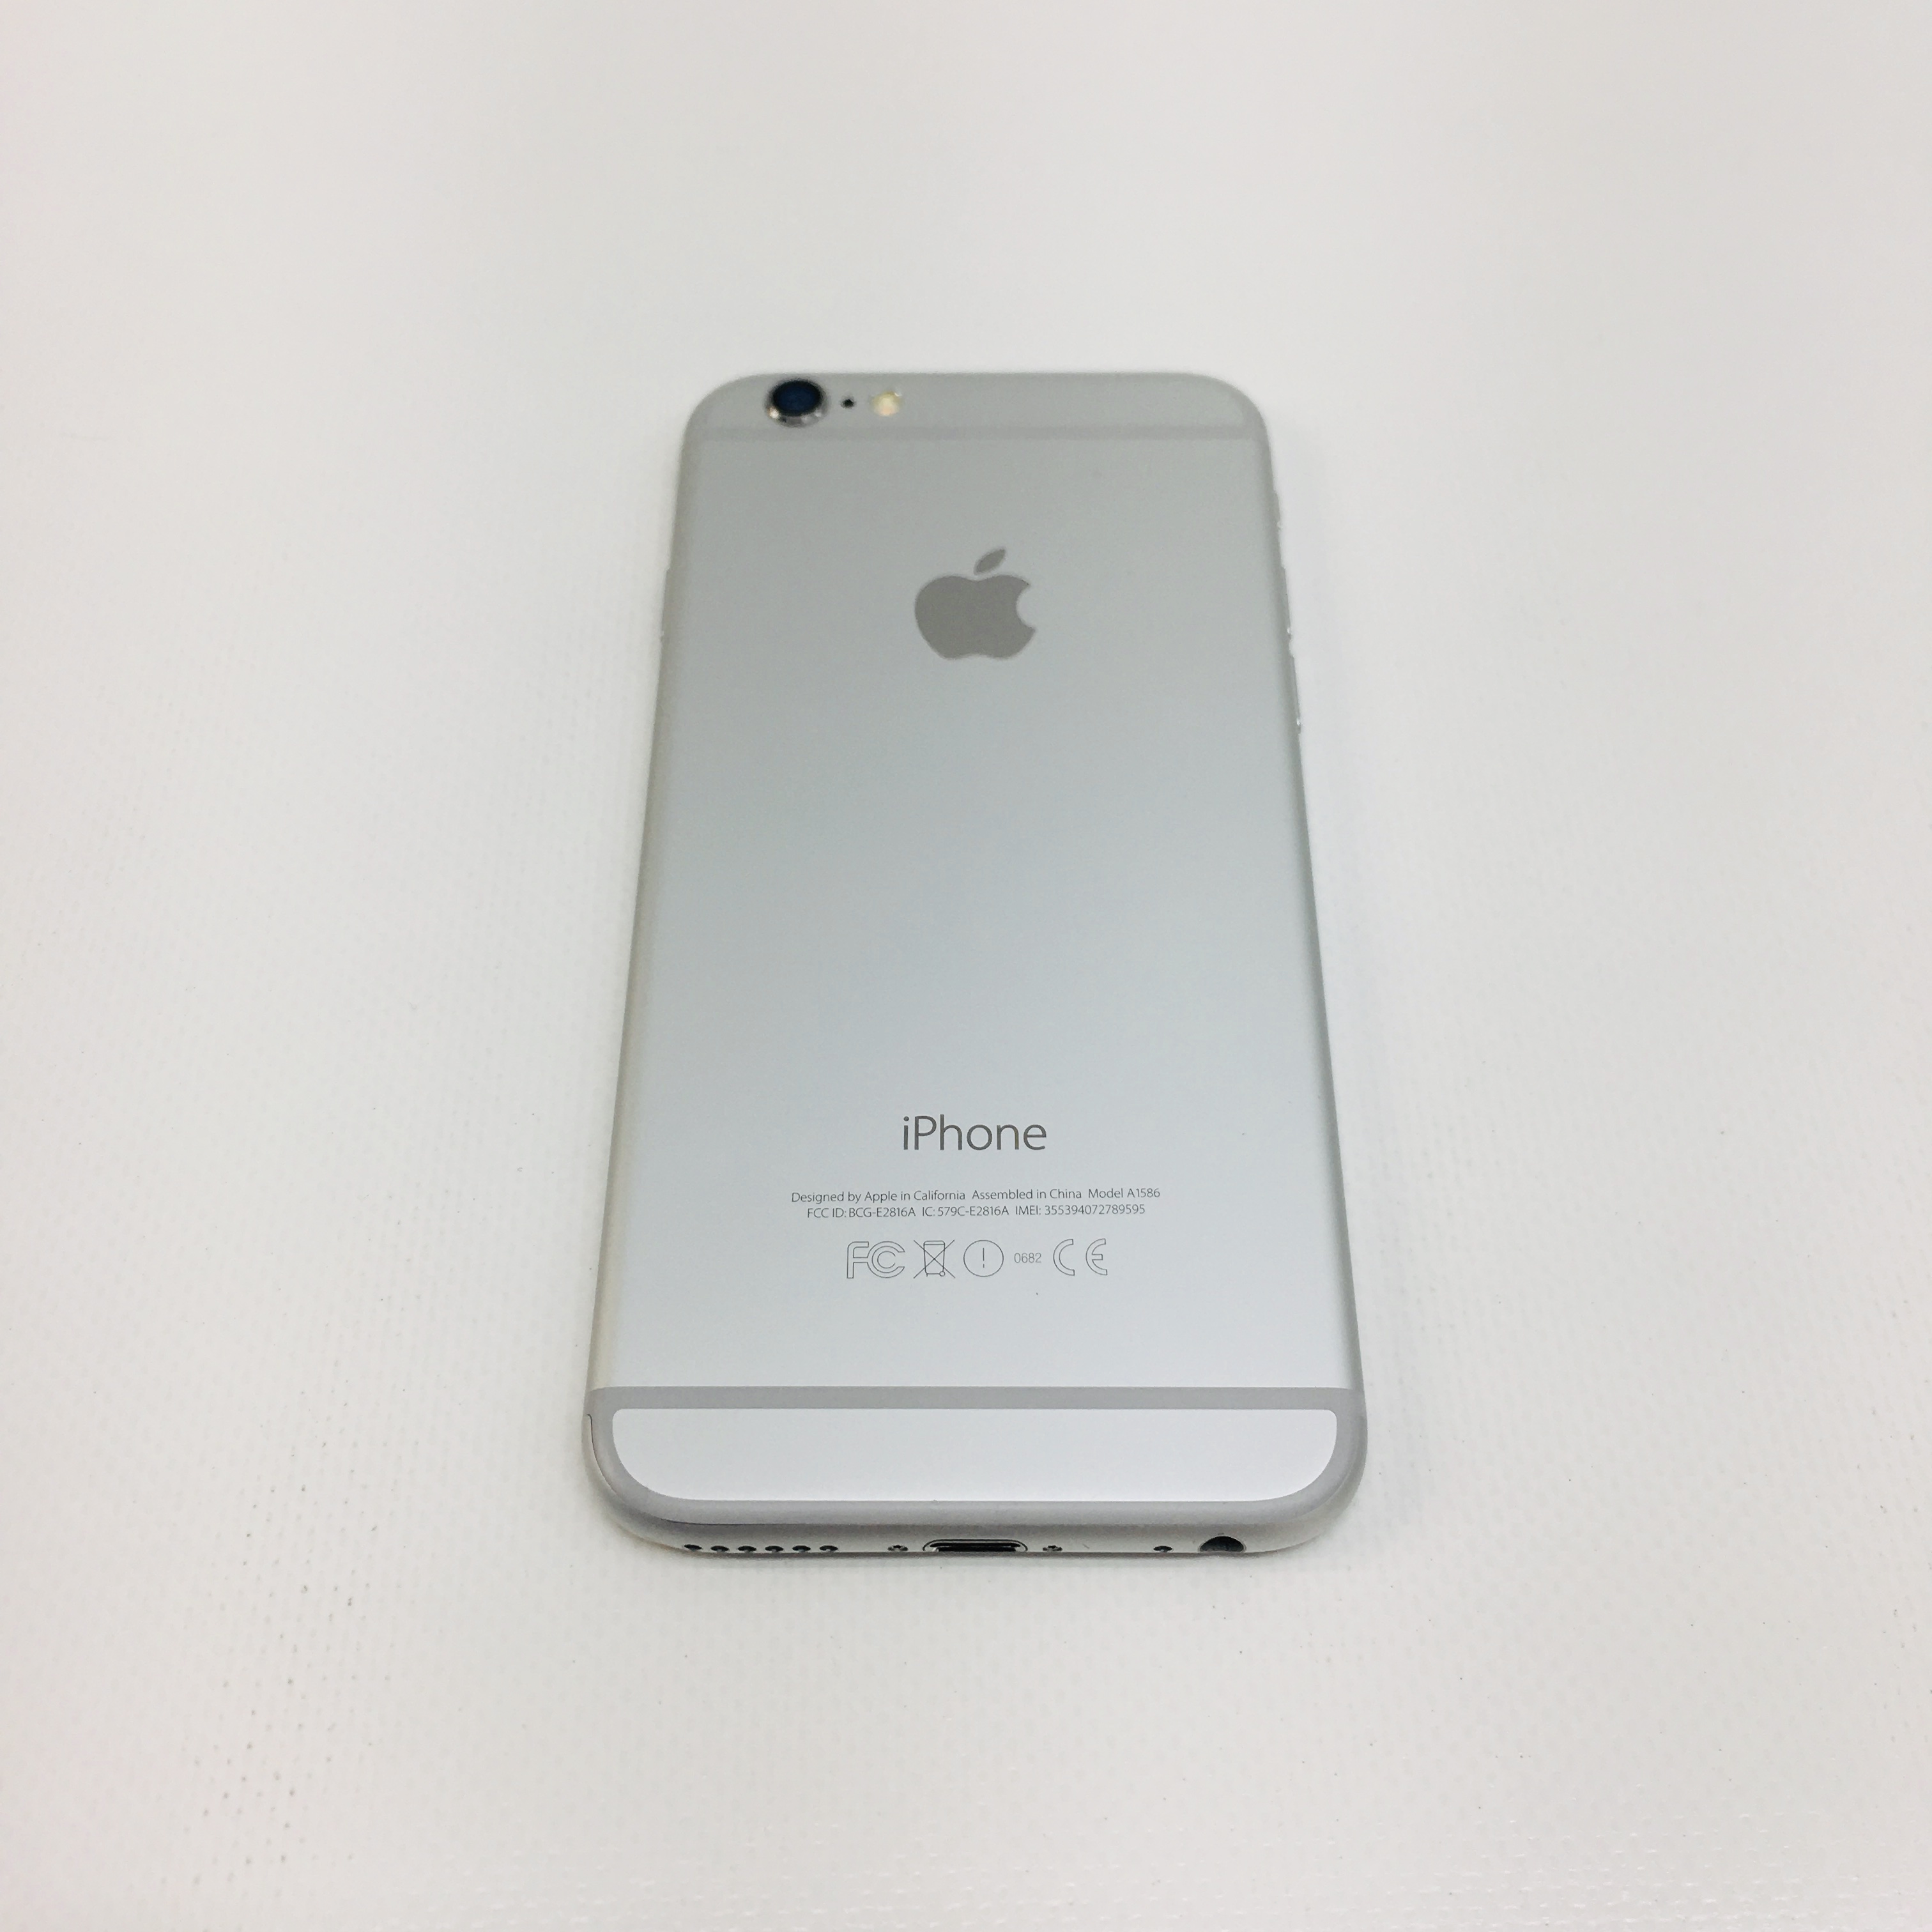 iPhone - 【未使用新品】au iPhone6 16GB ゴールドの+